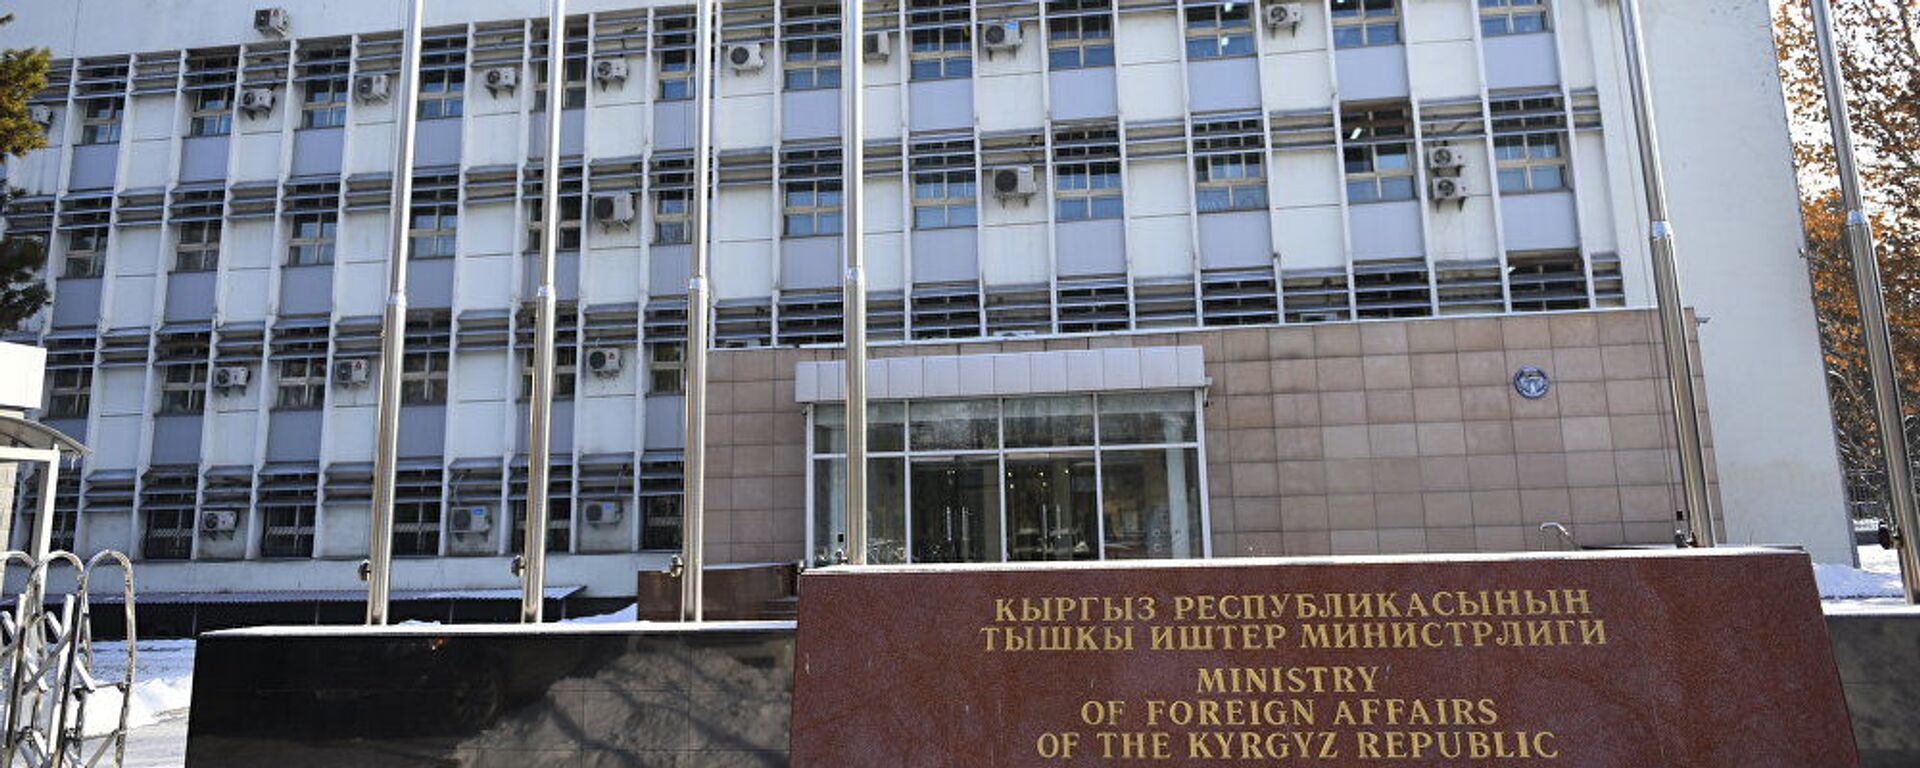 Здание министерства иностранных дел Кыргызской Республики в городе Бишкек  - Sputnik Тоҷикистон, 1920, 05.03.2022